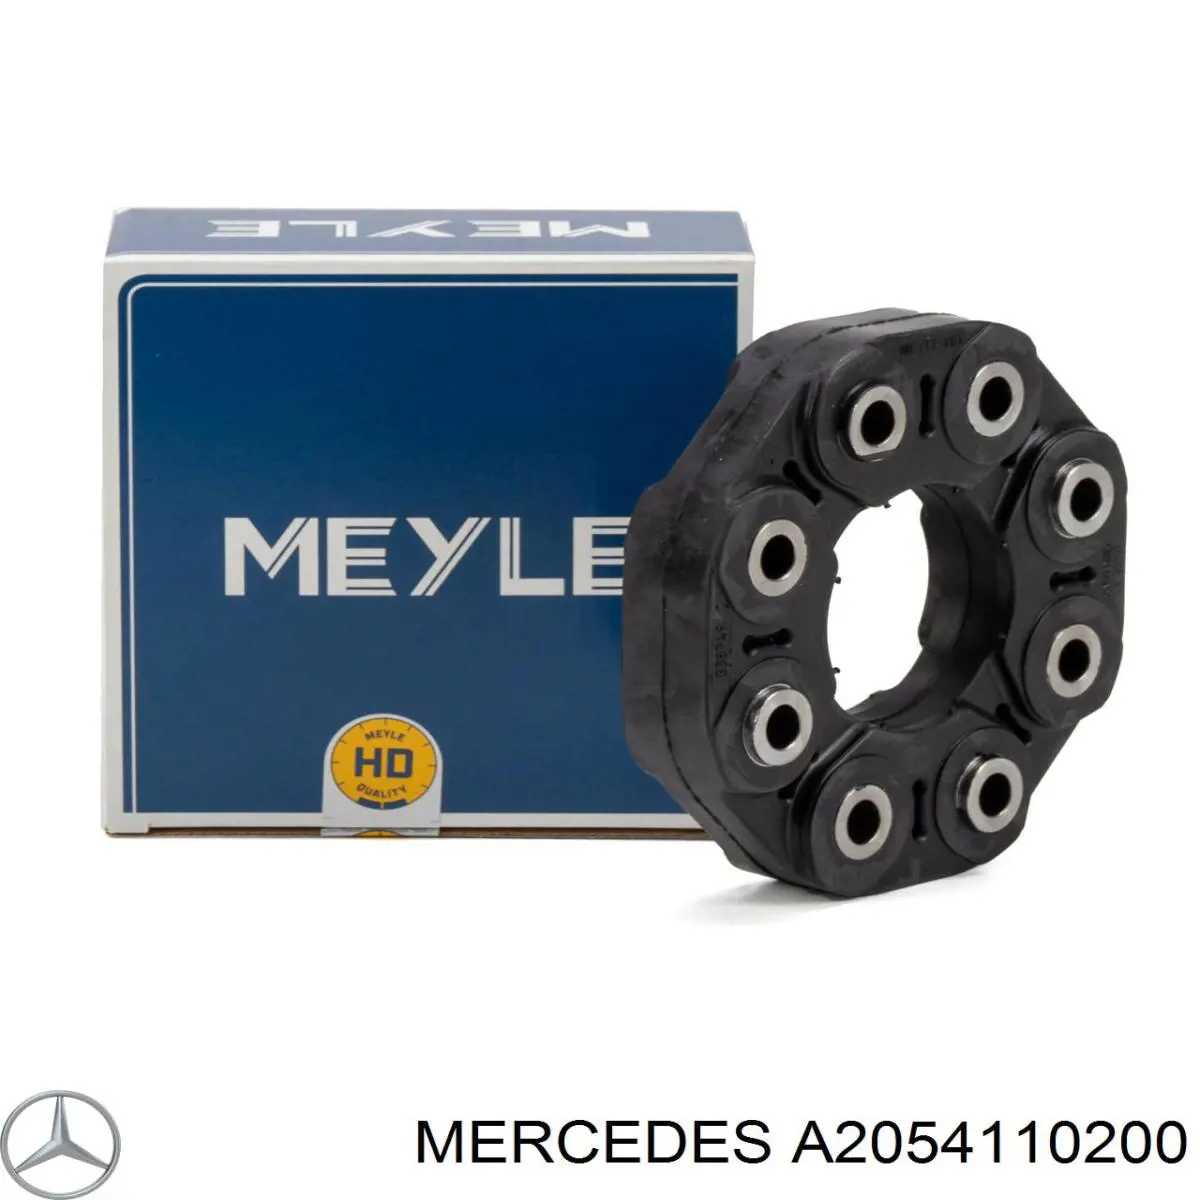 Acoplamiento elástico del cardán para Mercedes CLS (C257)